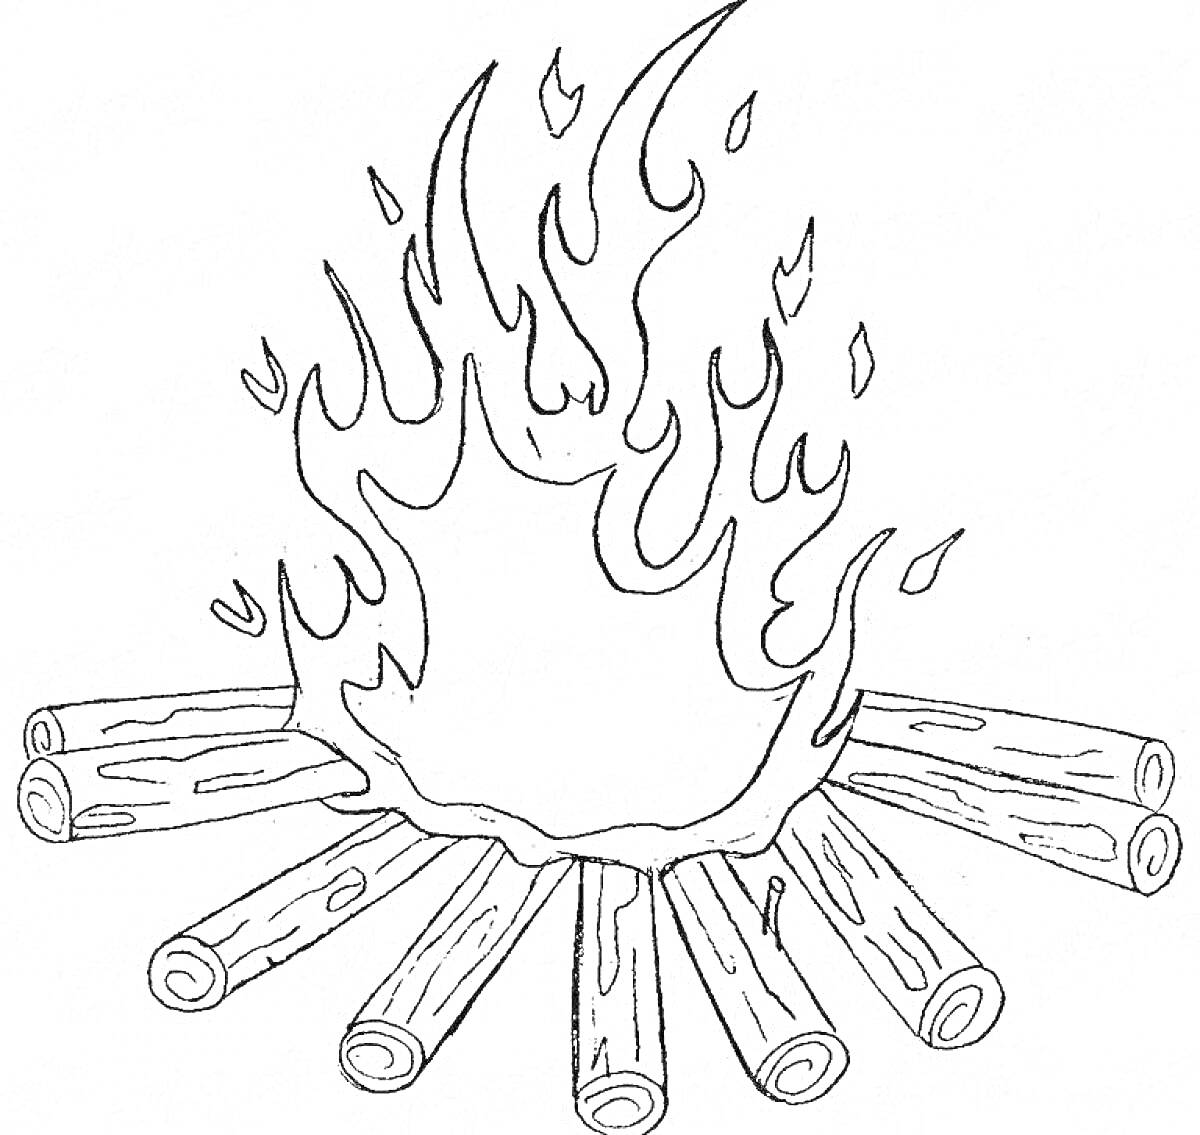 Костер из поленьев с пламенем, реалистичное изображение огня